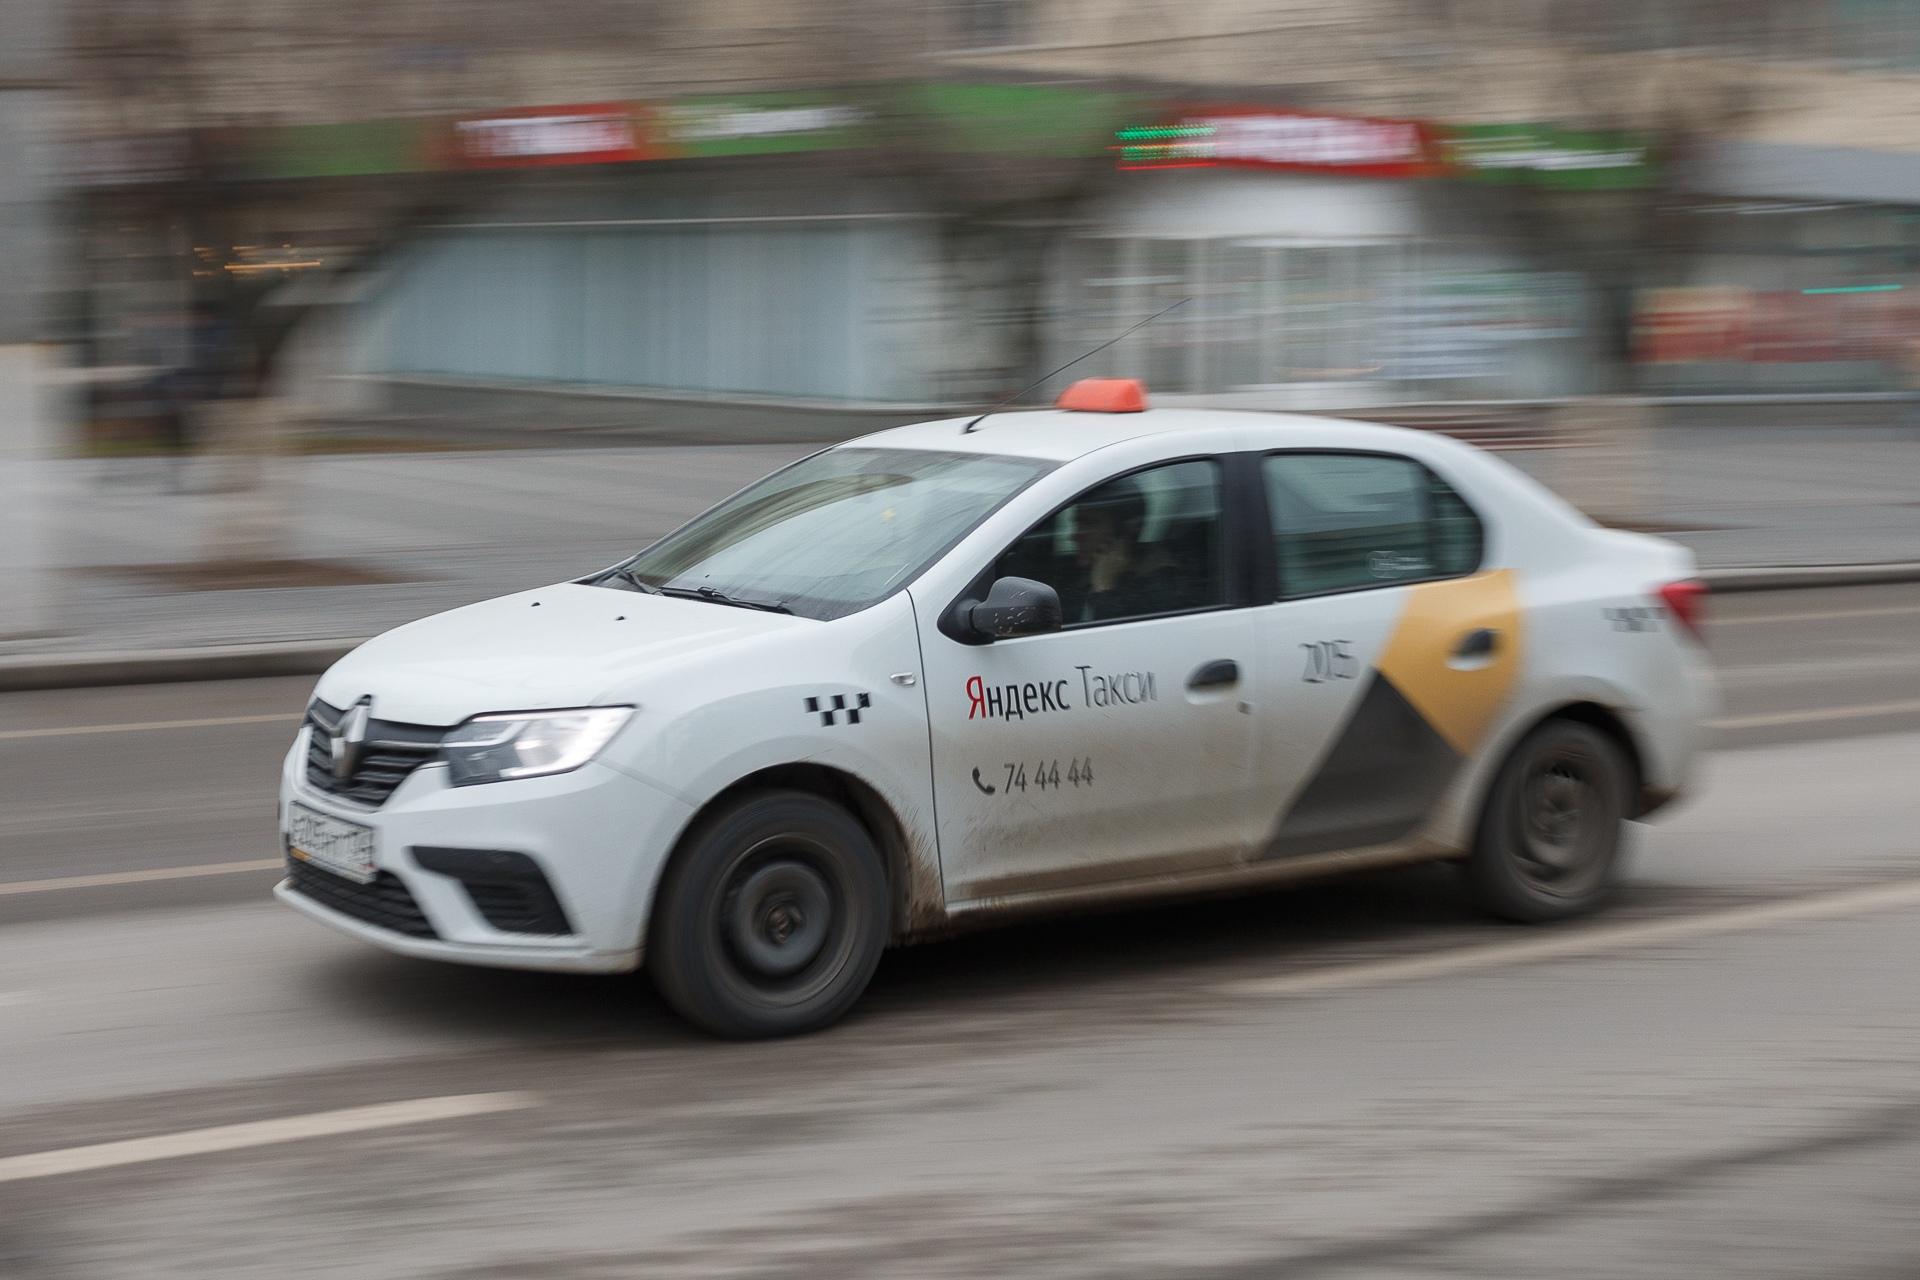 Вызвать такси в волгограде. Машины на которых таксуют. Волгоградский таксист. Фото вызванного такси.